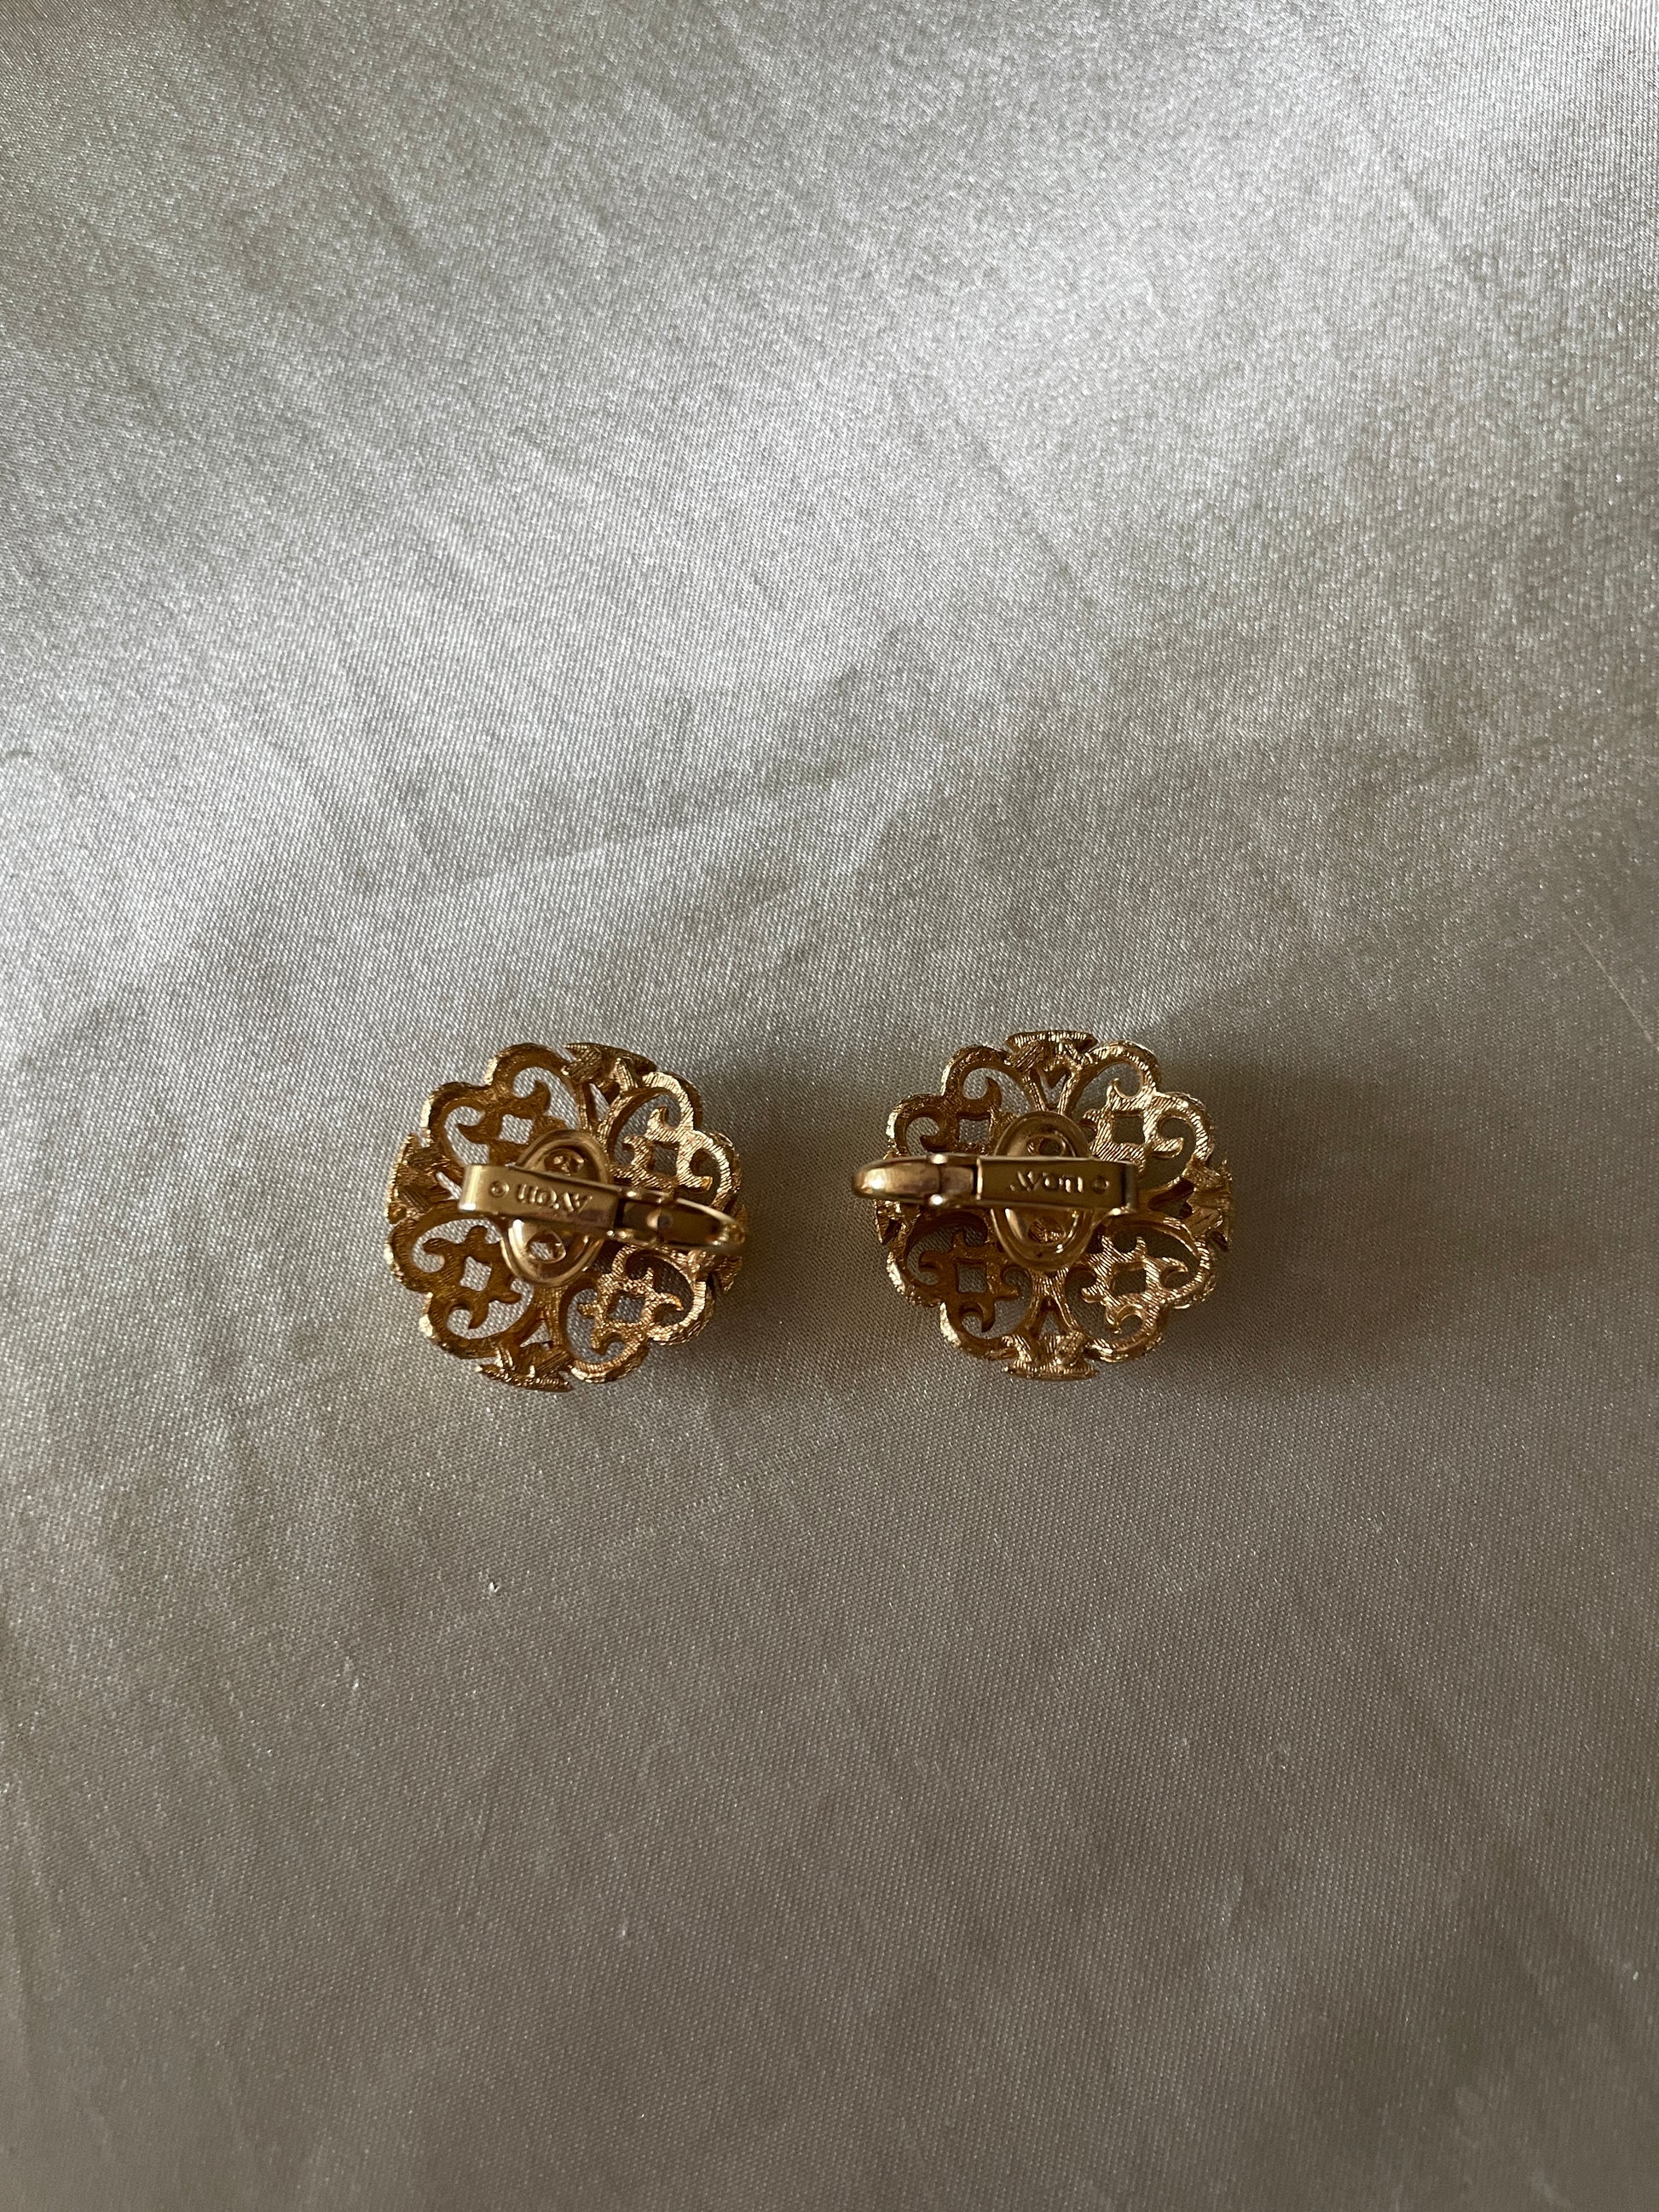  80s Avon Lovely Vintage Gold Tone Clip Earrings